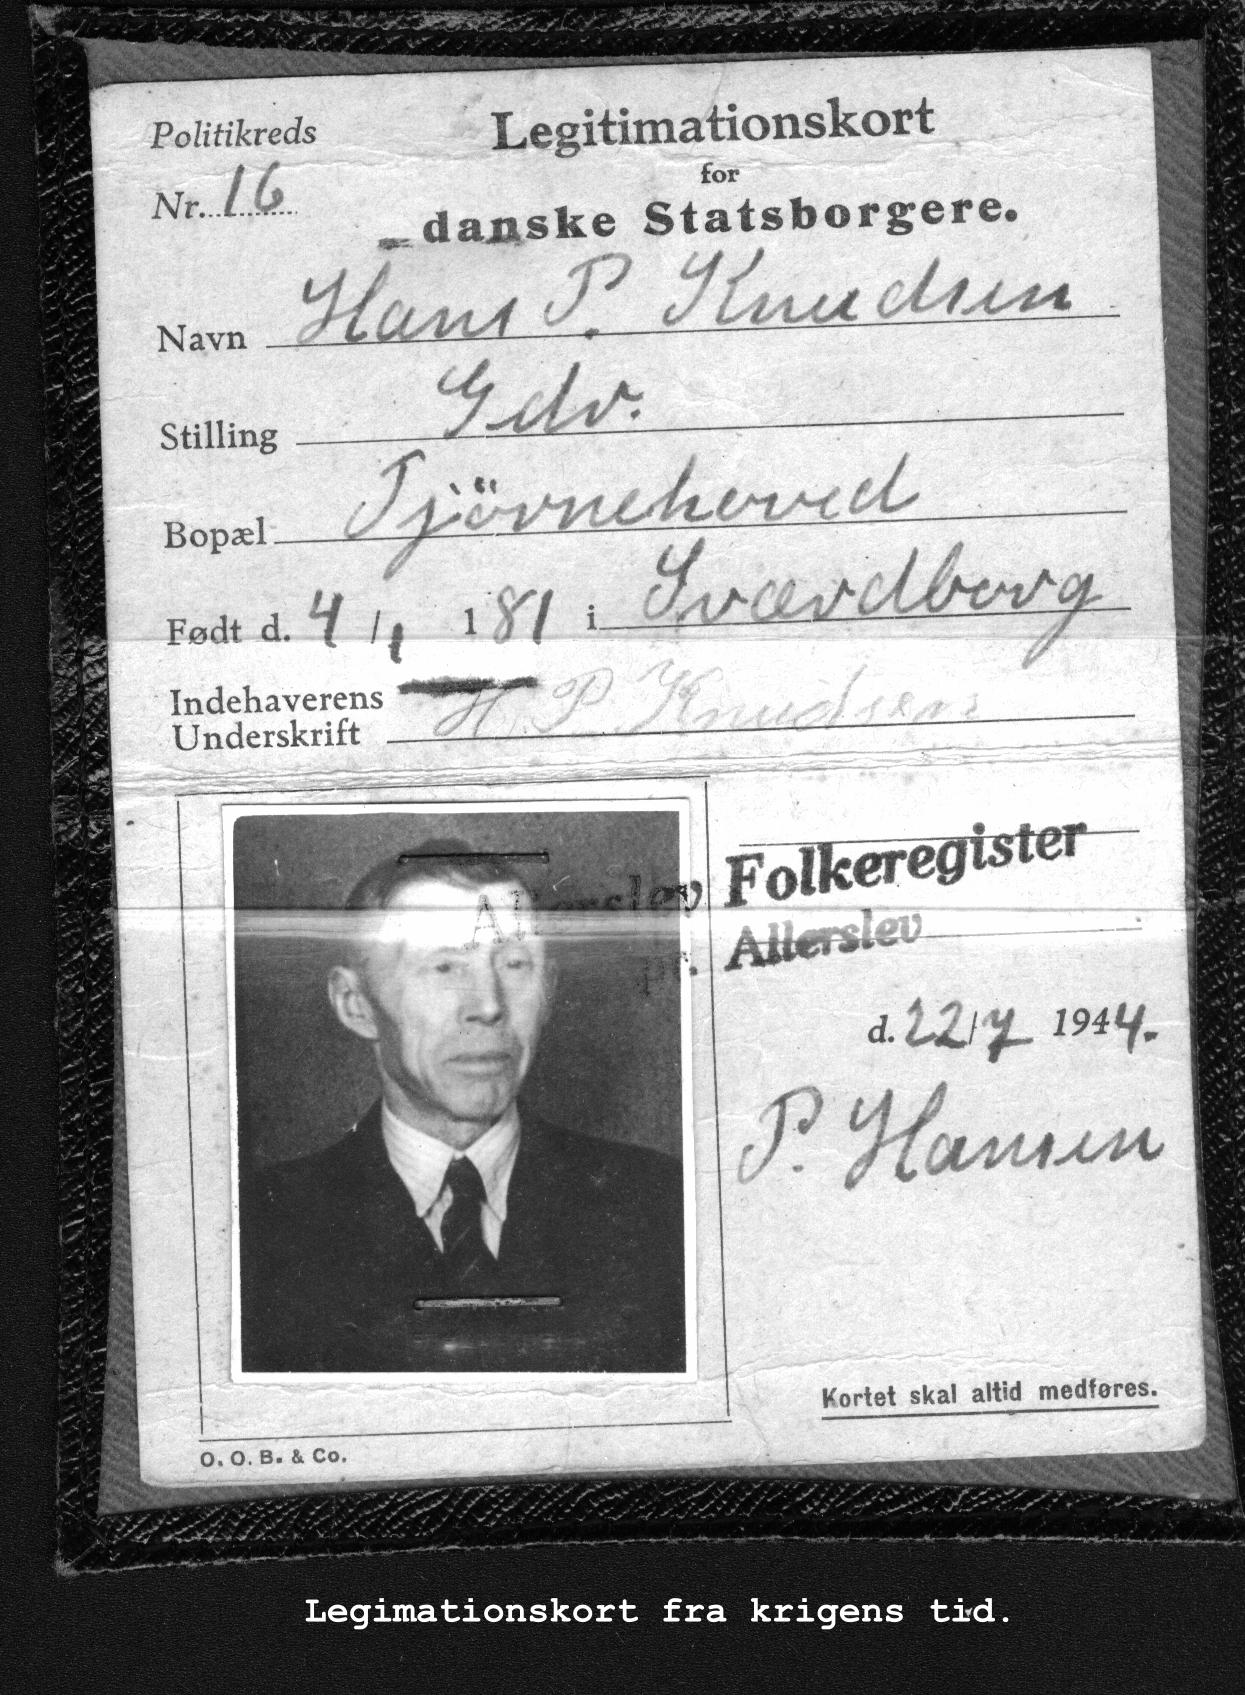 Hans Peter Knudsens legimationkort under krigen i 1940-1945